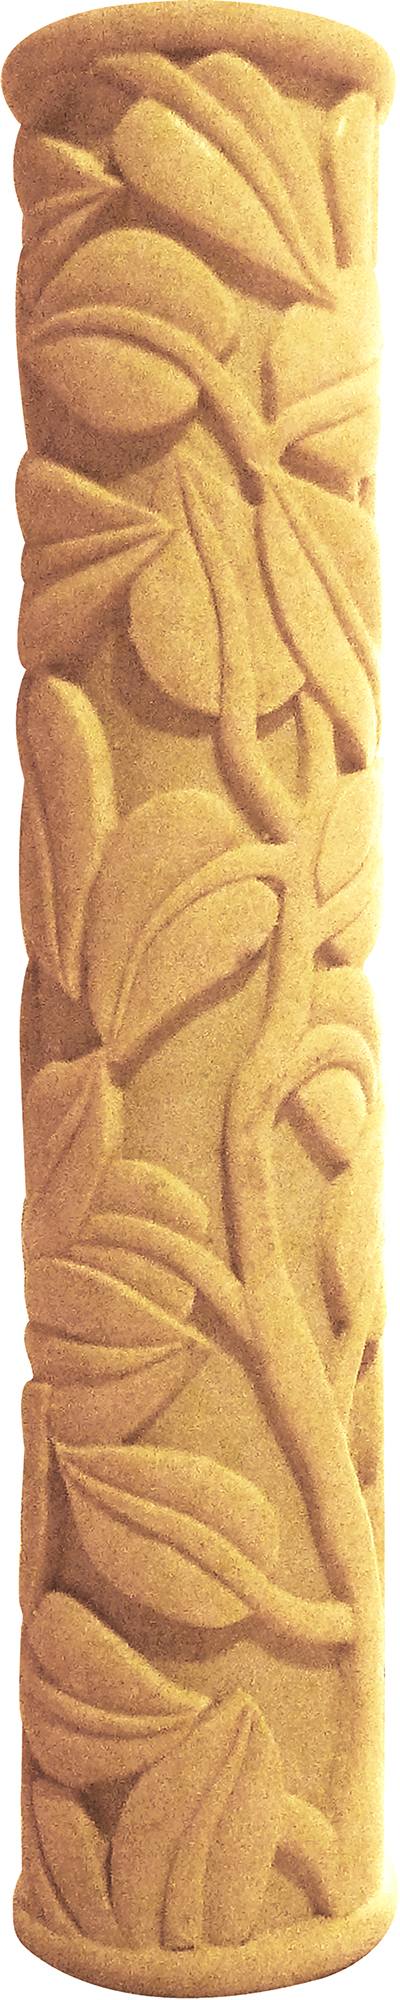 柱子砂岩雕塑建材加盟图片:Z0027B透光花叶柱